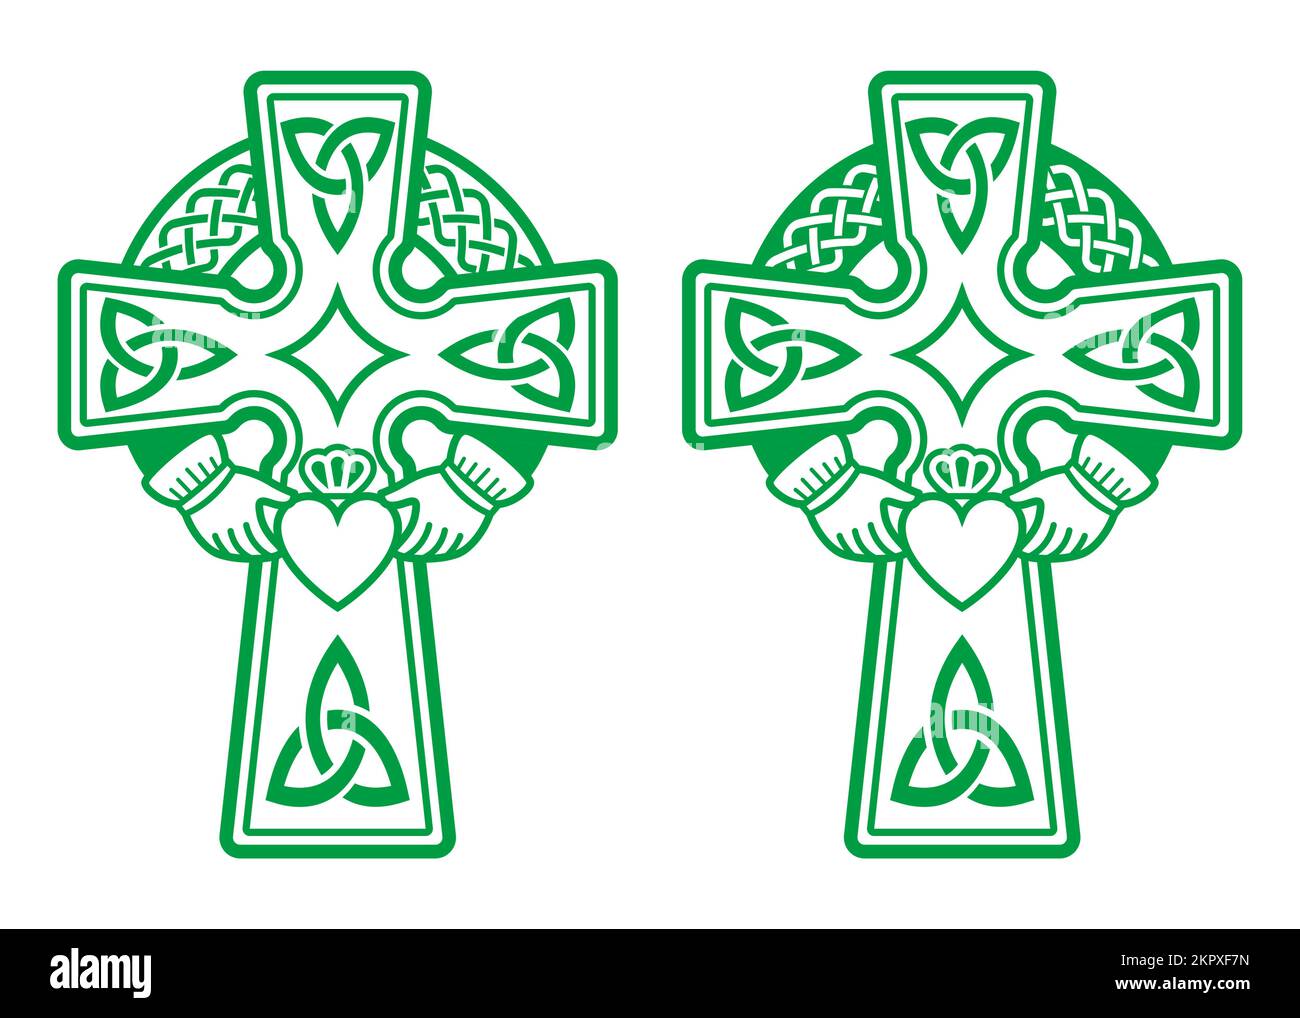 Croix de vert celtique irlandaise avec bague Claddagh - coeur et mains Vector design Set - célébration de la St Patrick en Irlande Illustration de Vecteur